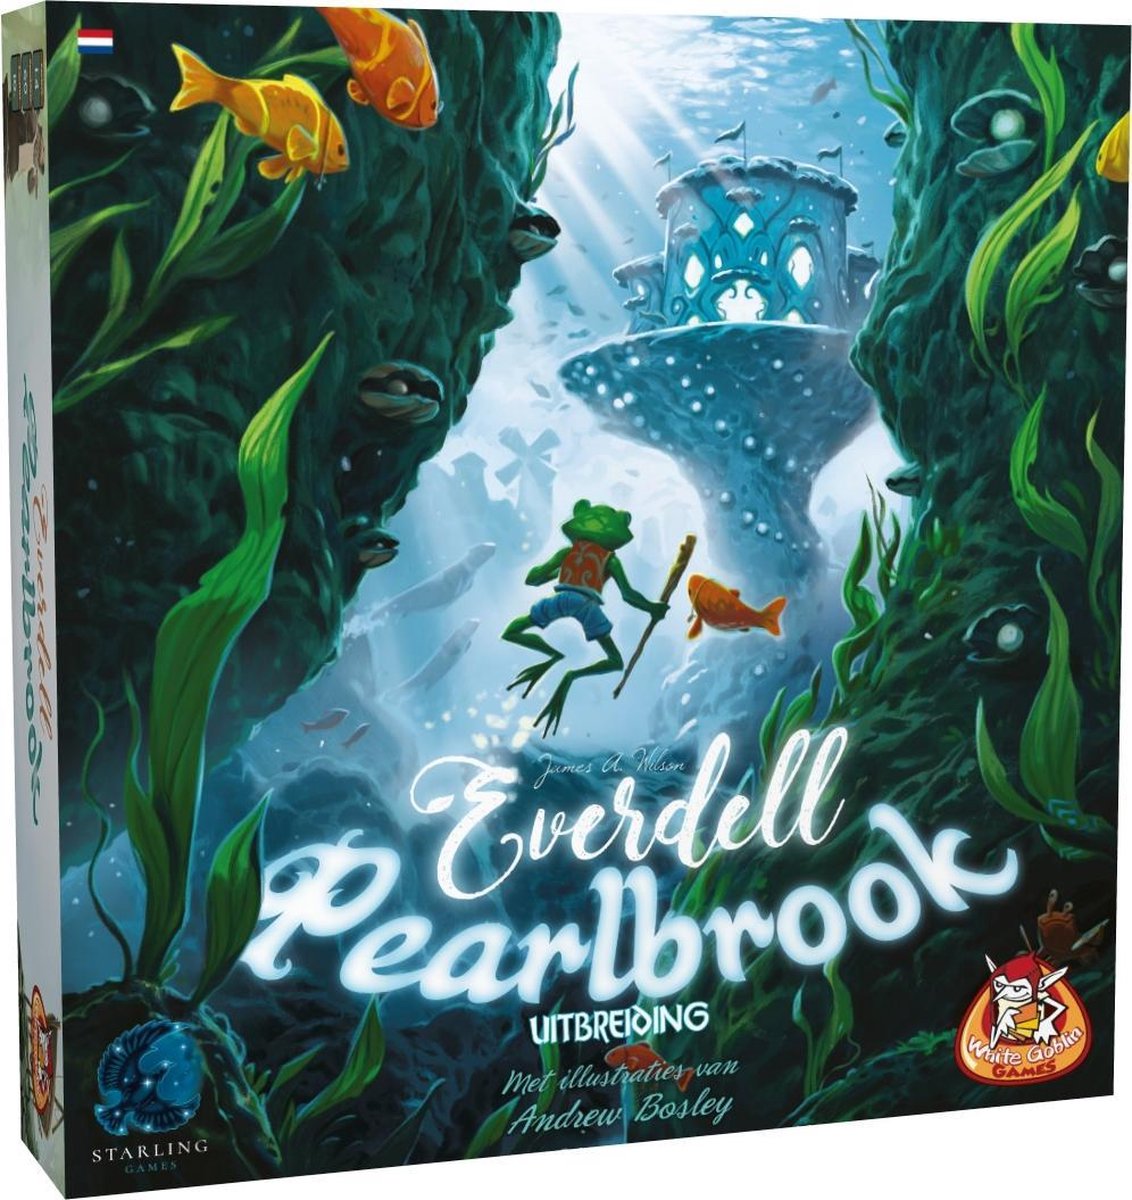 White Goblin Games speluitbreiding Everdell Pearlbrook (NL)